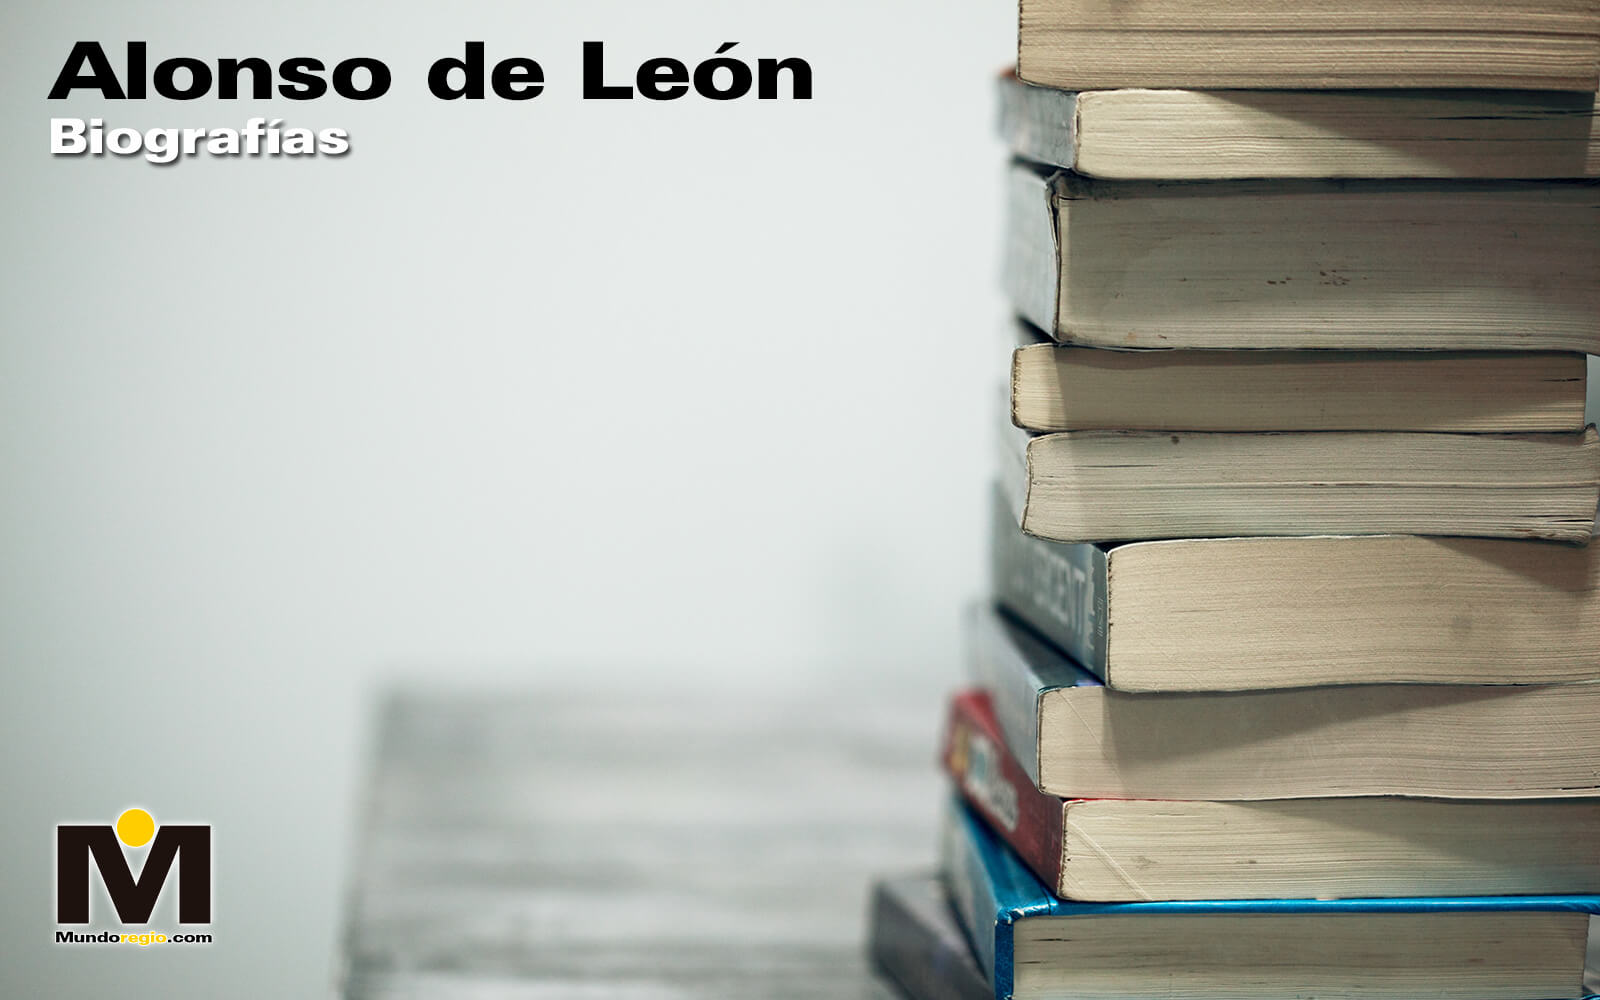 Alonso de León